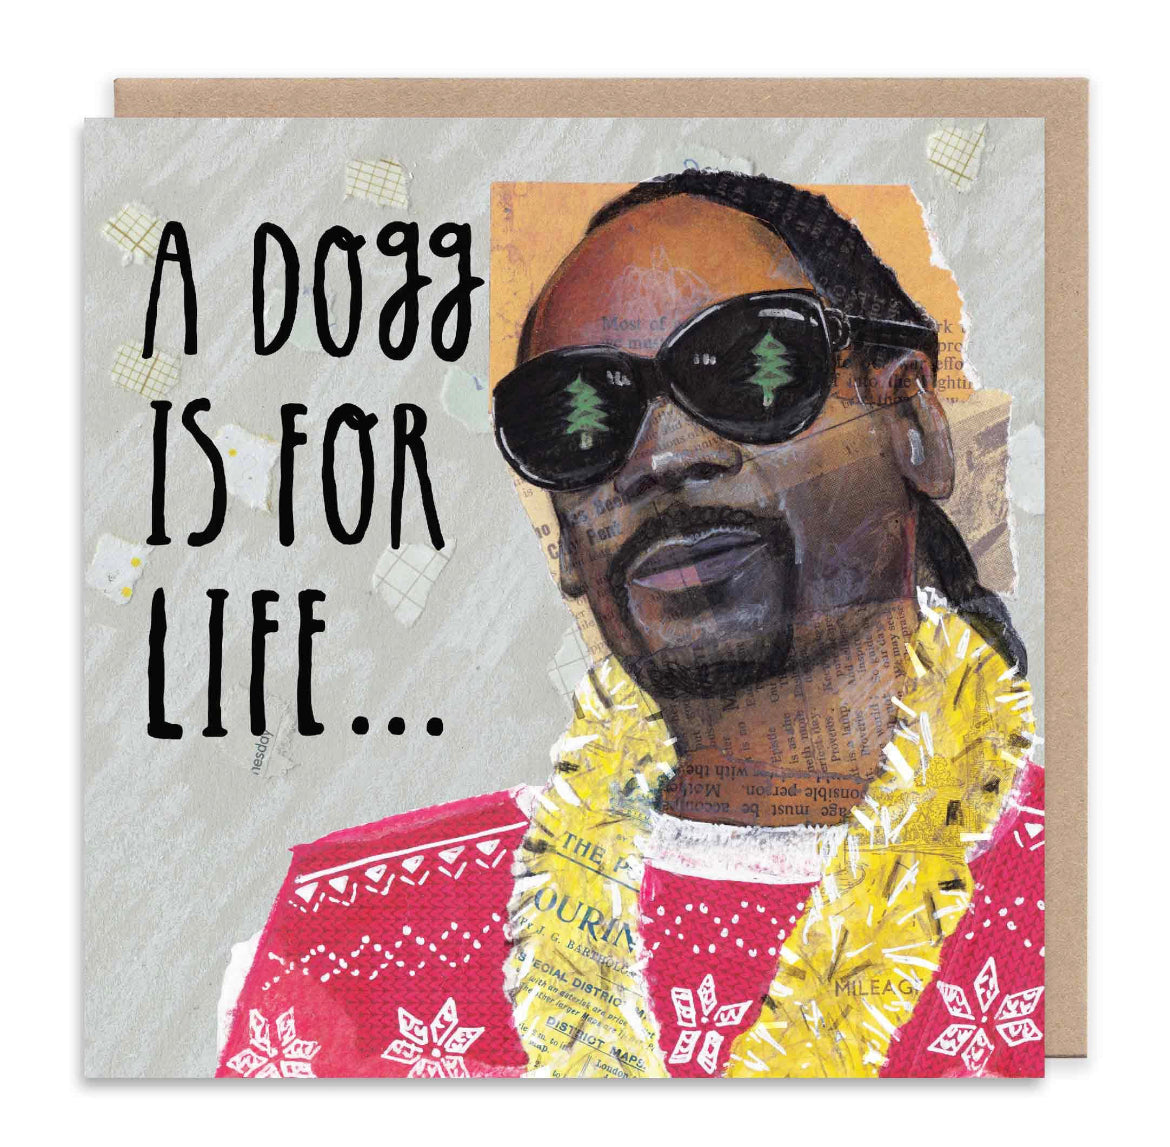 Snoop Dogg Christmas Card